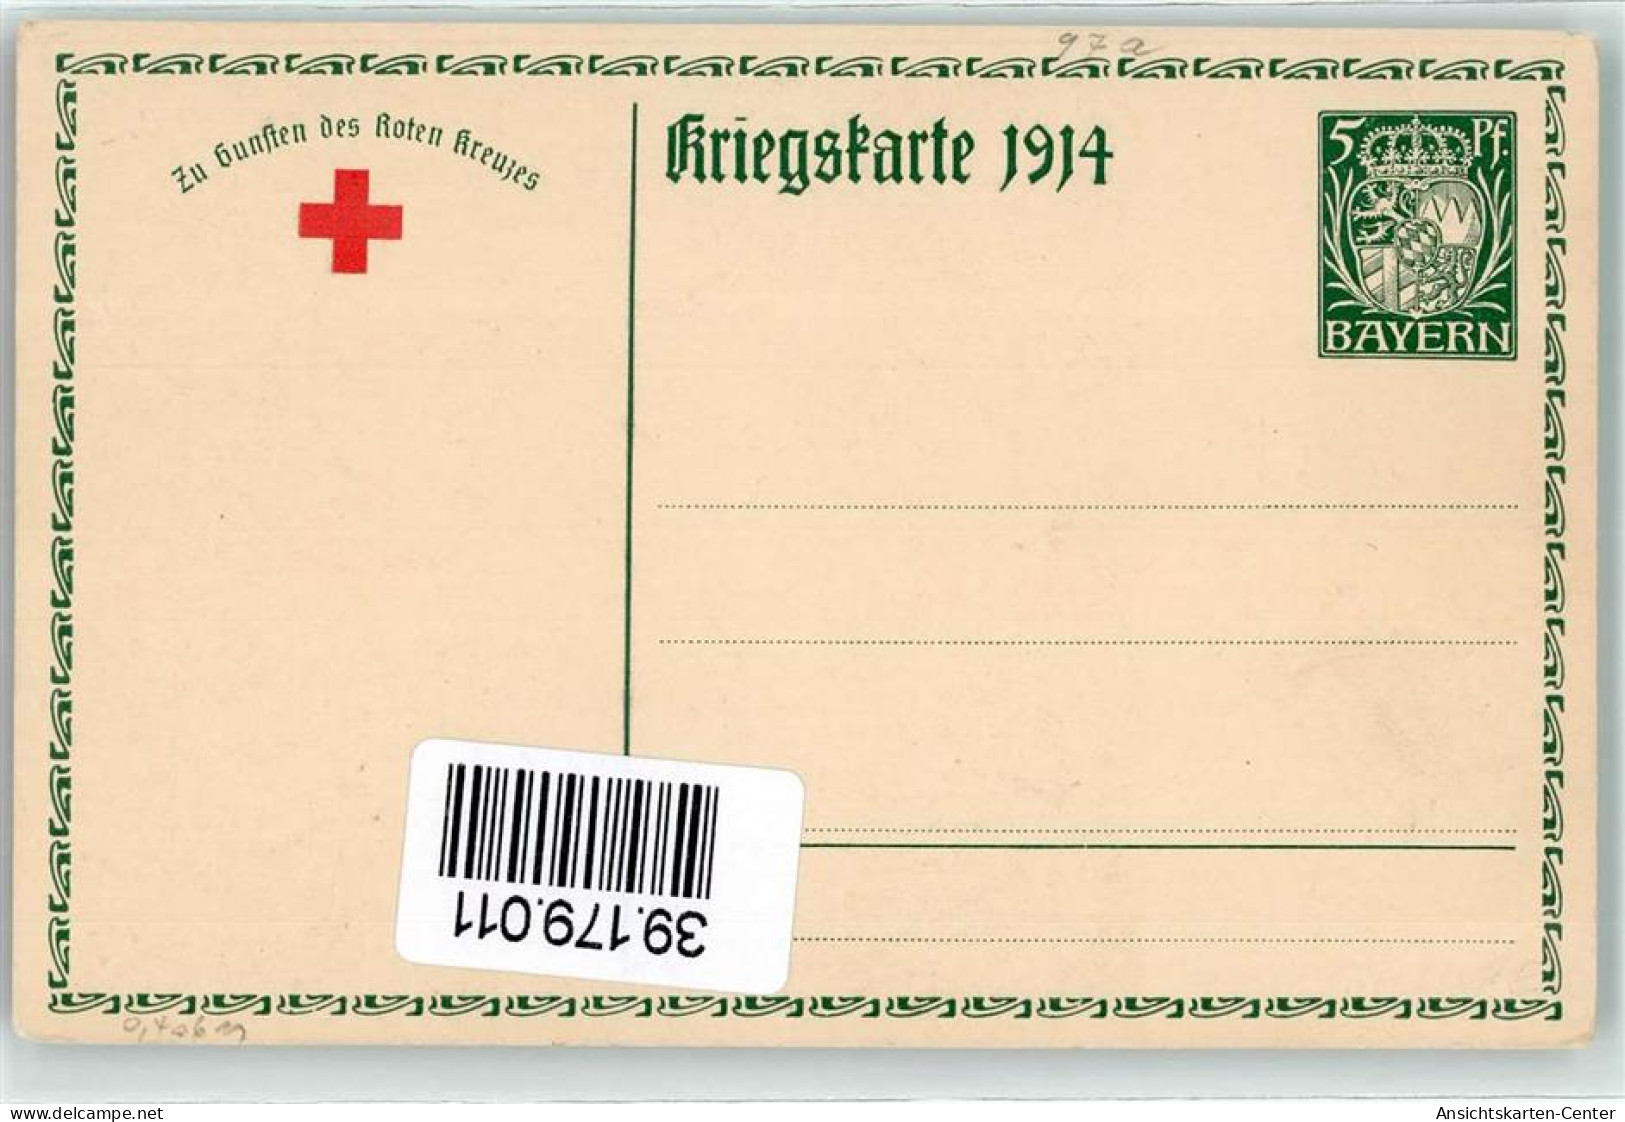 39179011 - Ludwig III Koenig Von Bayern  Gemaelde Von Firle Faksimile Unterschrift  AK - Cartes Postales